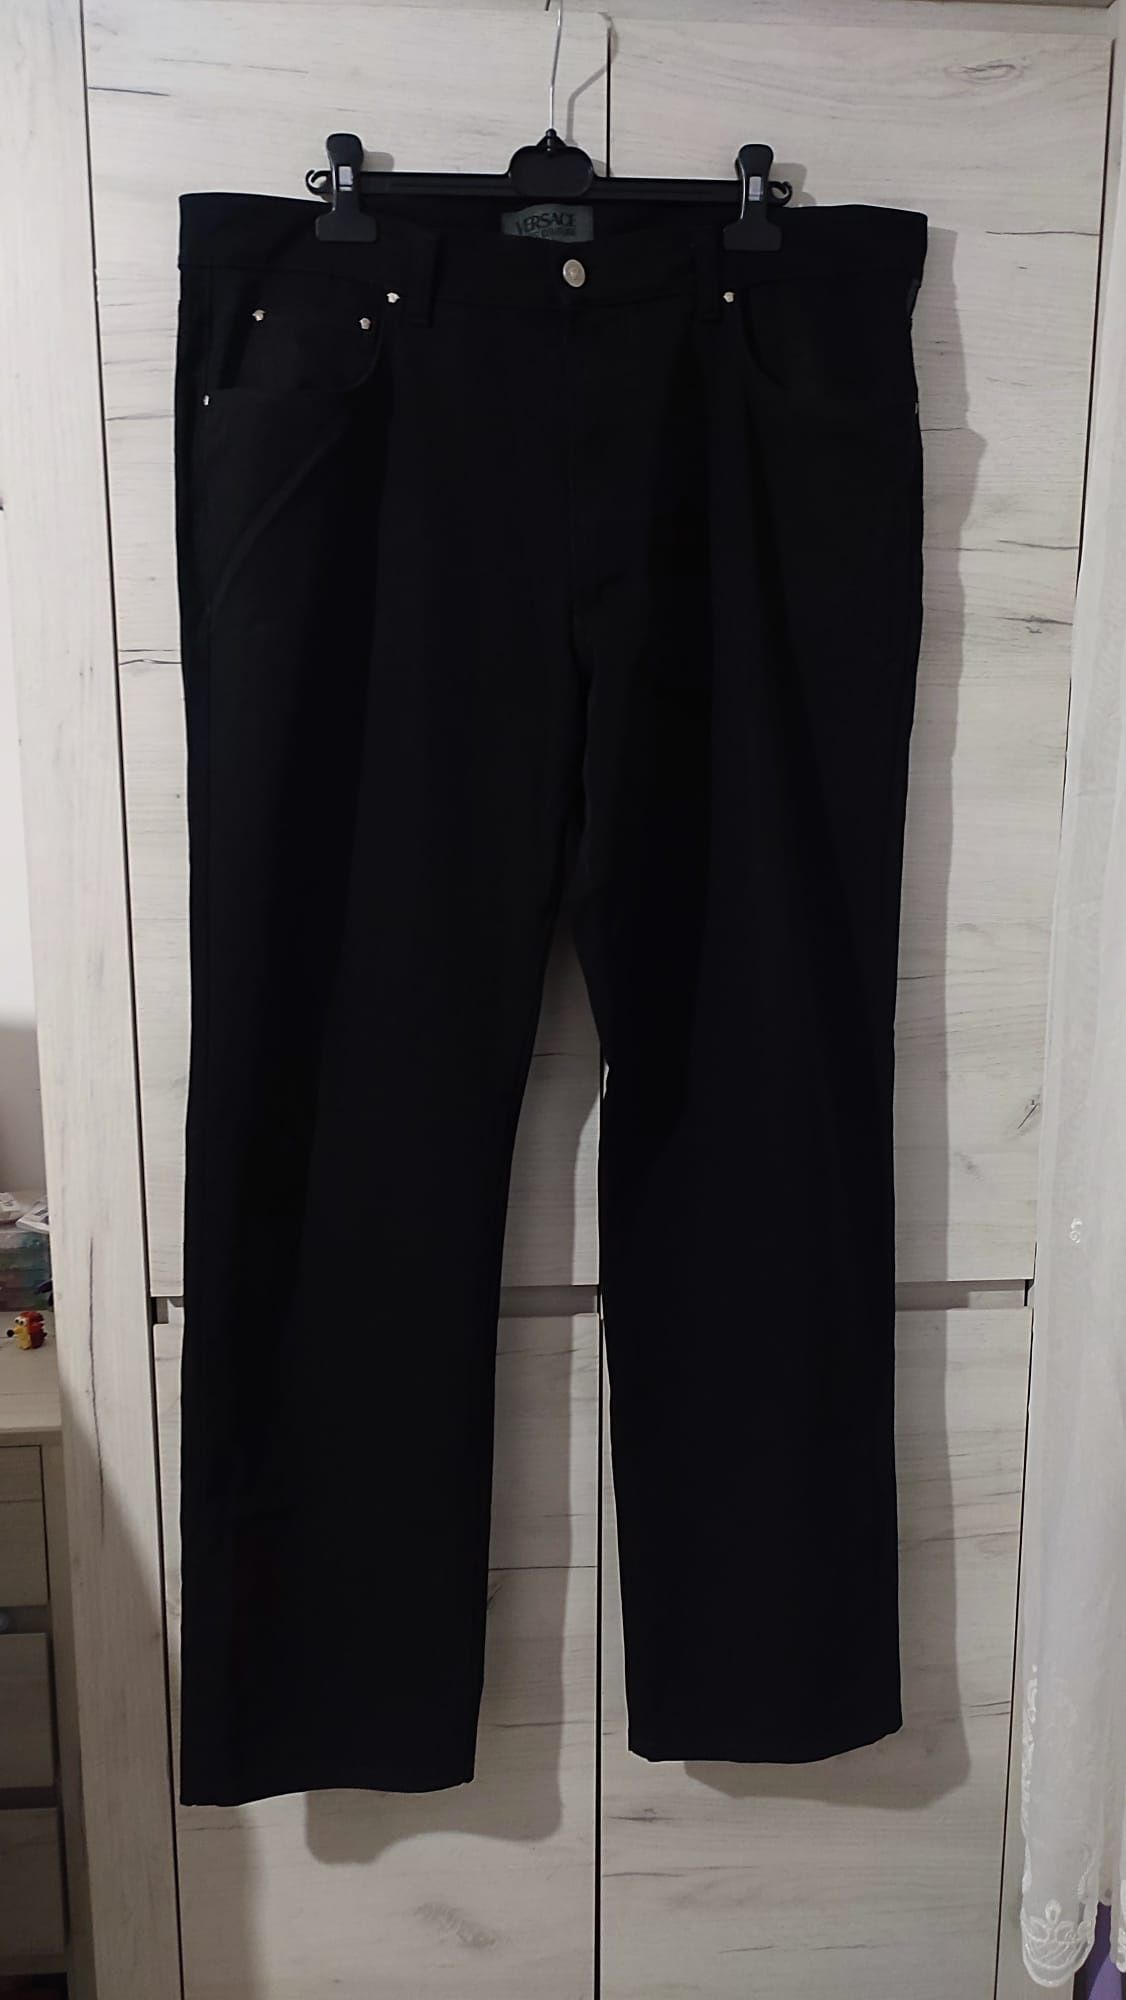 Elastyczne czarne spodnie Versace 58 Jeans Couture
Stan bdb